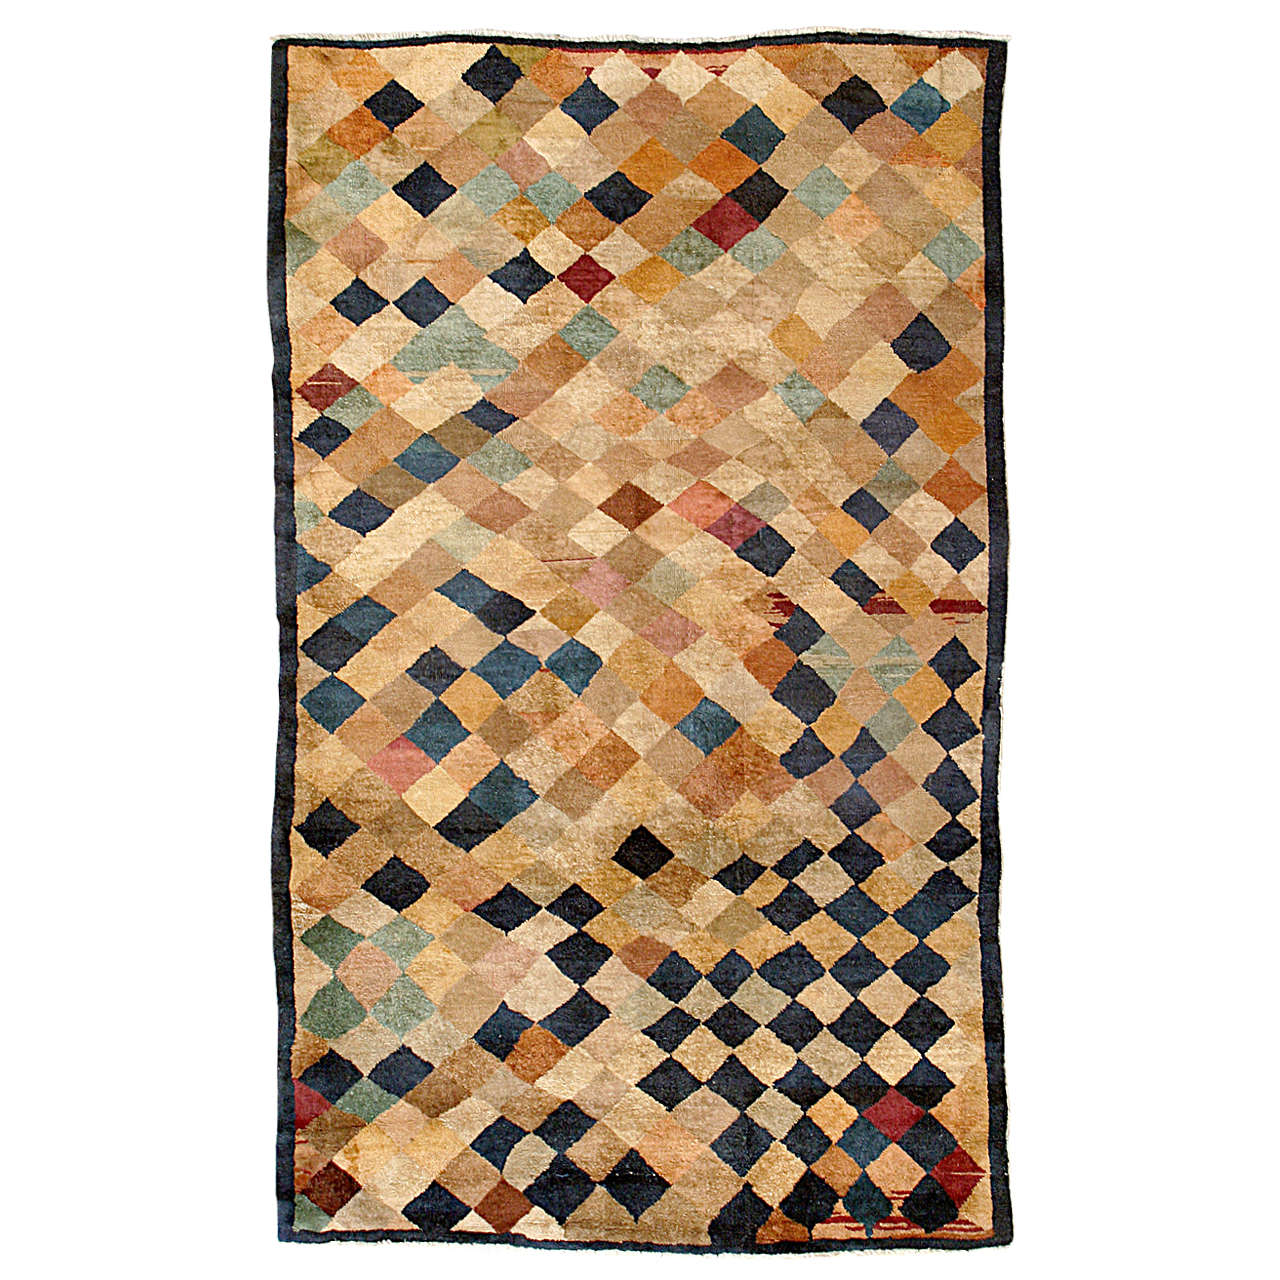 Antiker geometrischer chinesischer Teppich mit polychromen Rauten